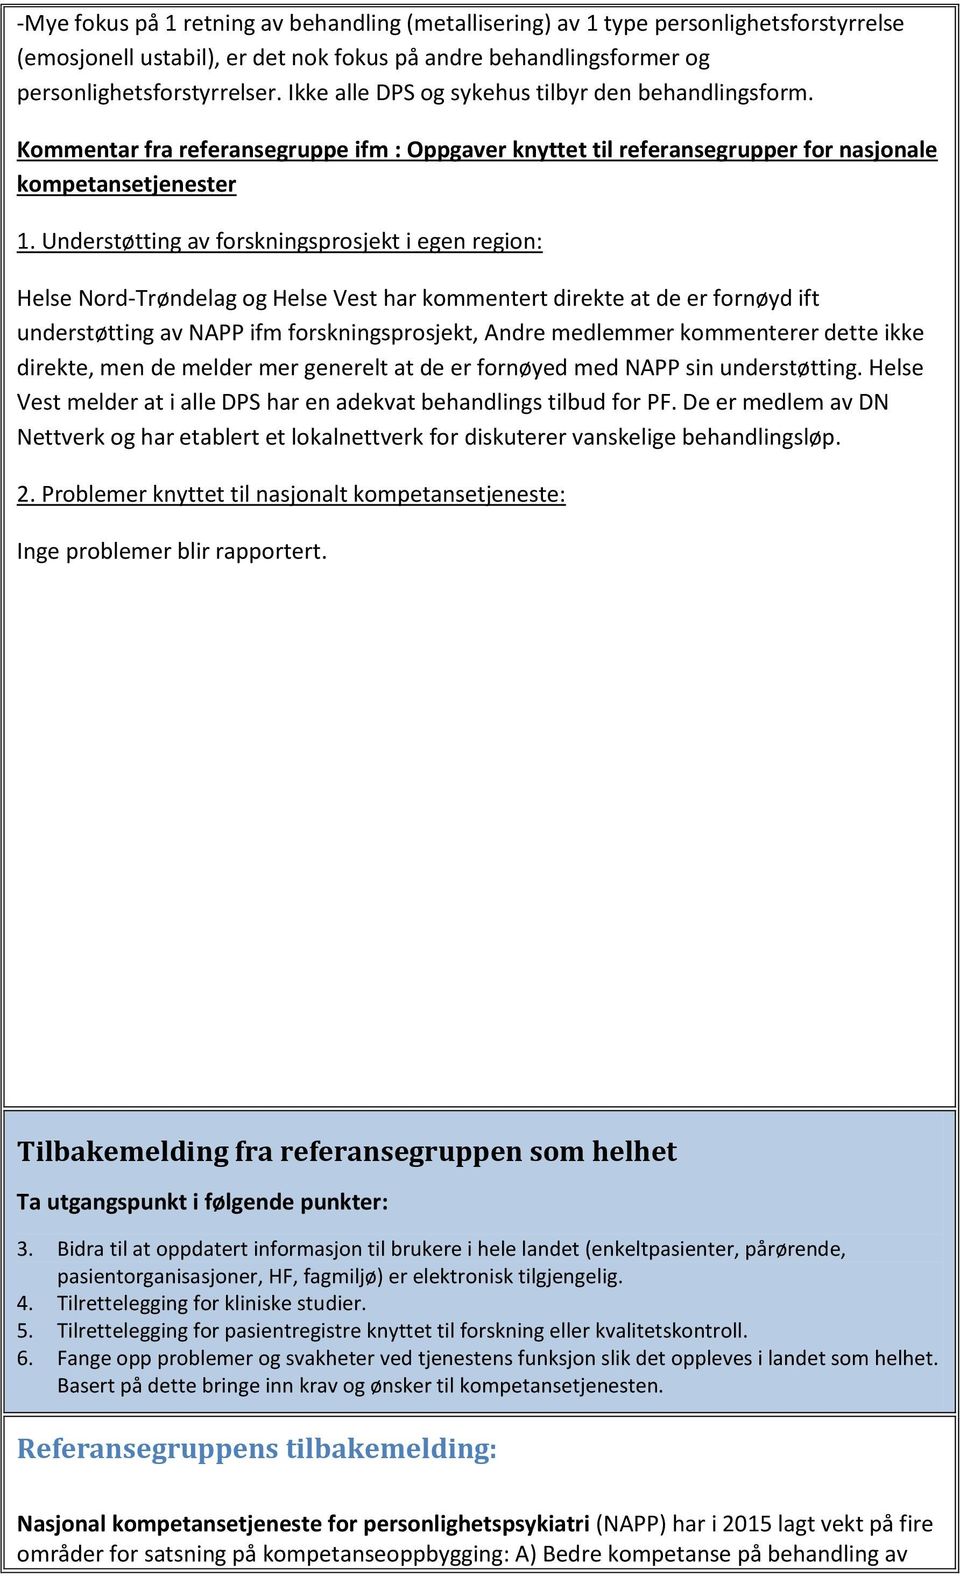 Understøtting av forskningsprosjekt i egen region: Helse Nord-Trøndelag og Helse Vest har kommentert direkte at de er fornøyd ift understøtting av NAPP ifm forskningsprosjekt, Andre medlemmer